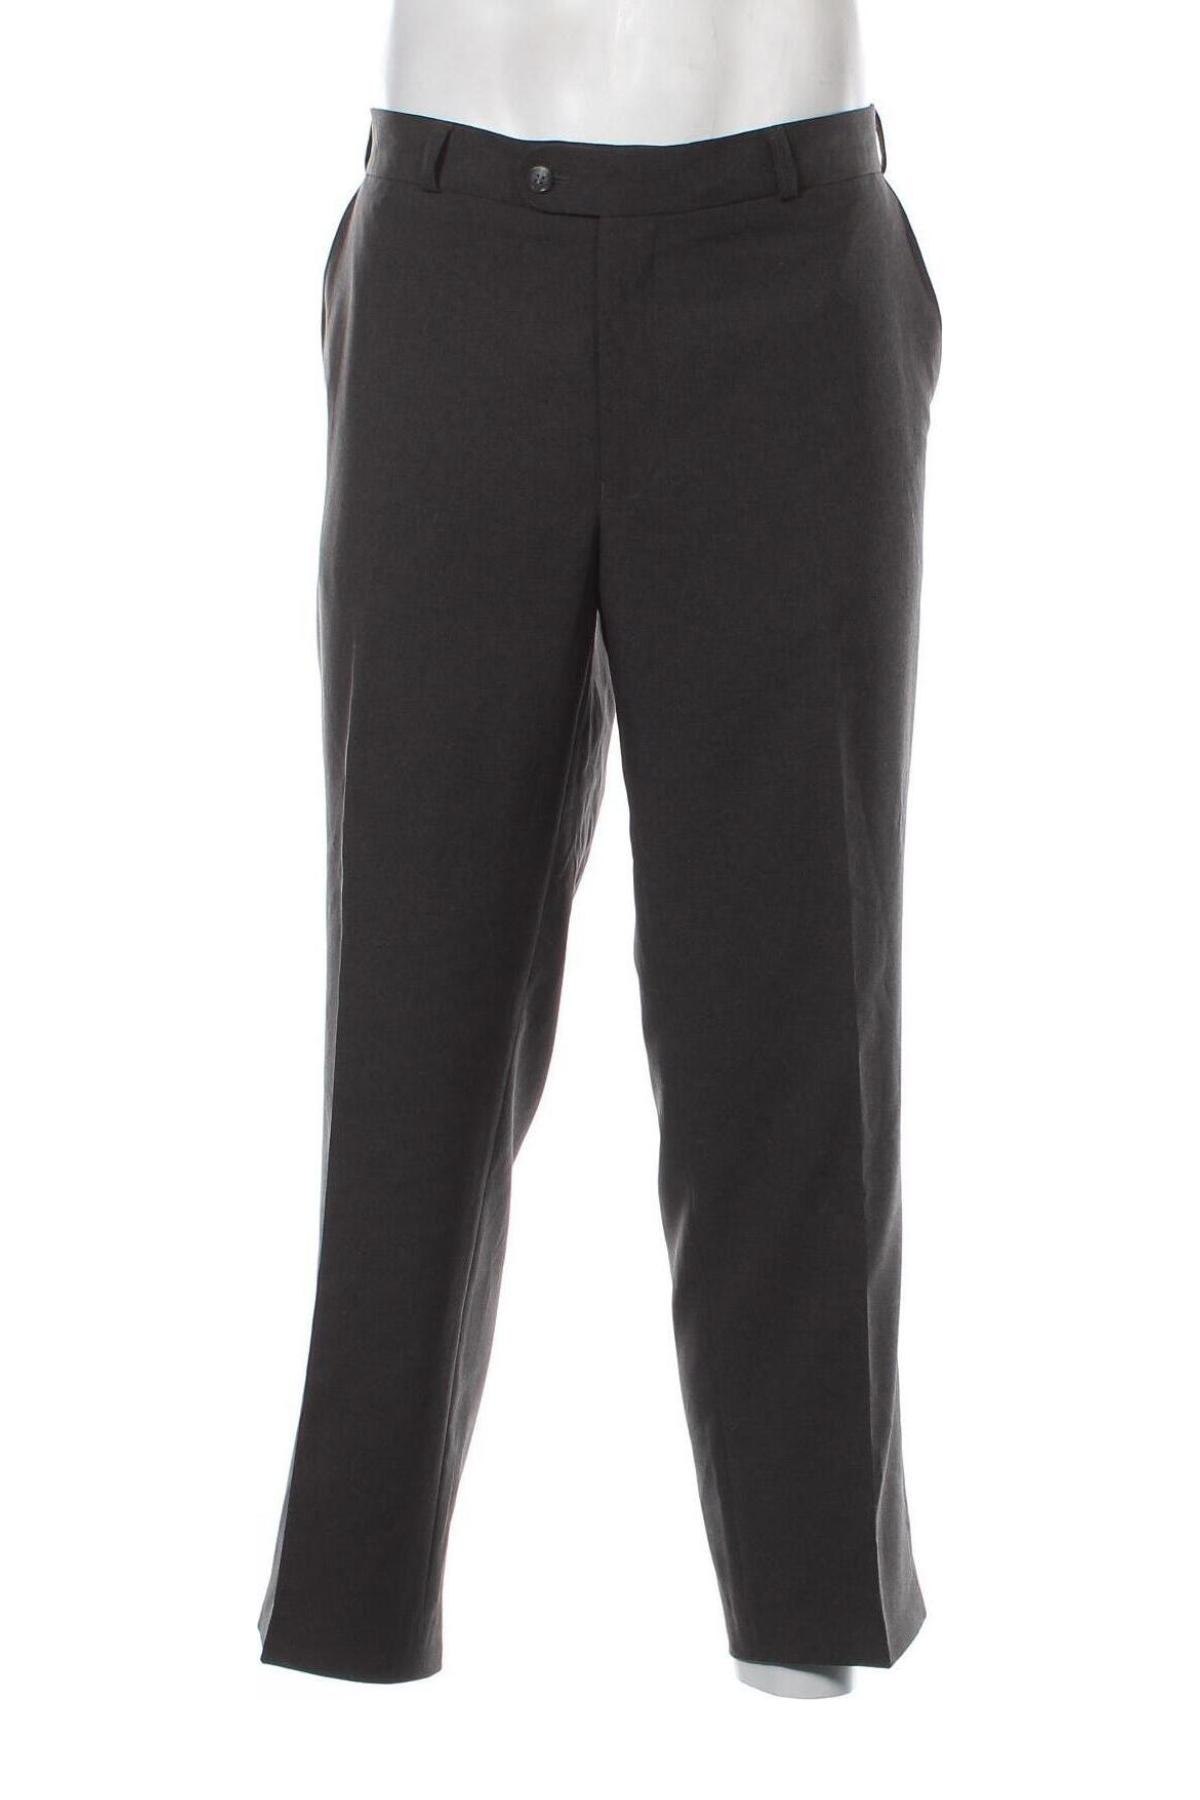 Ανδρικό παντελόνι Canda, Μέγεθος XL, Χρώμα Μαύρο, Τιμή 5,74 €